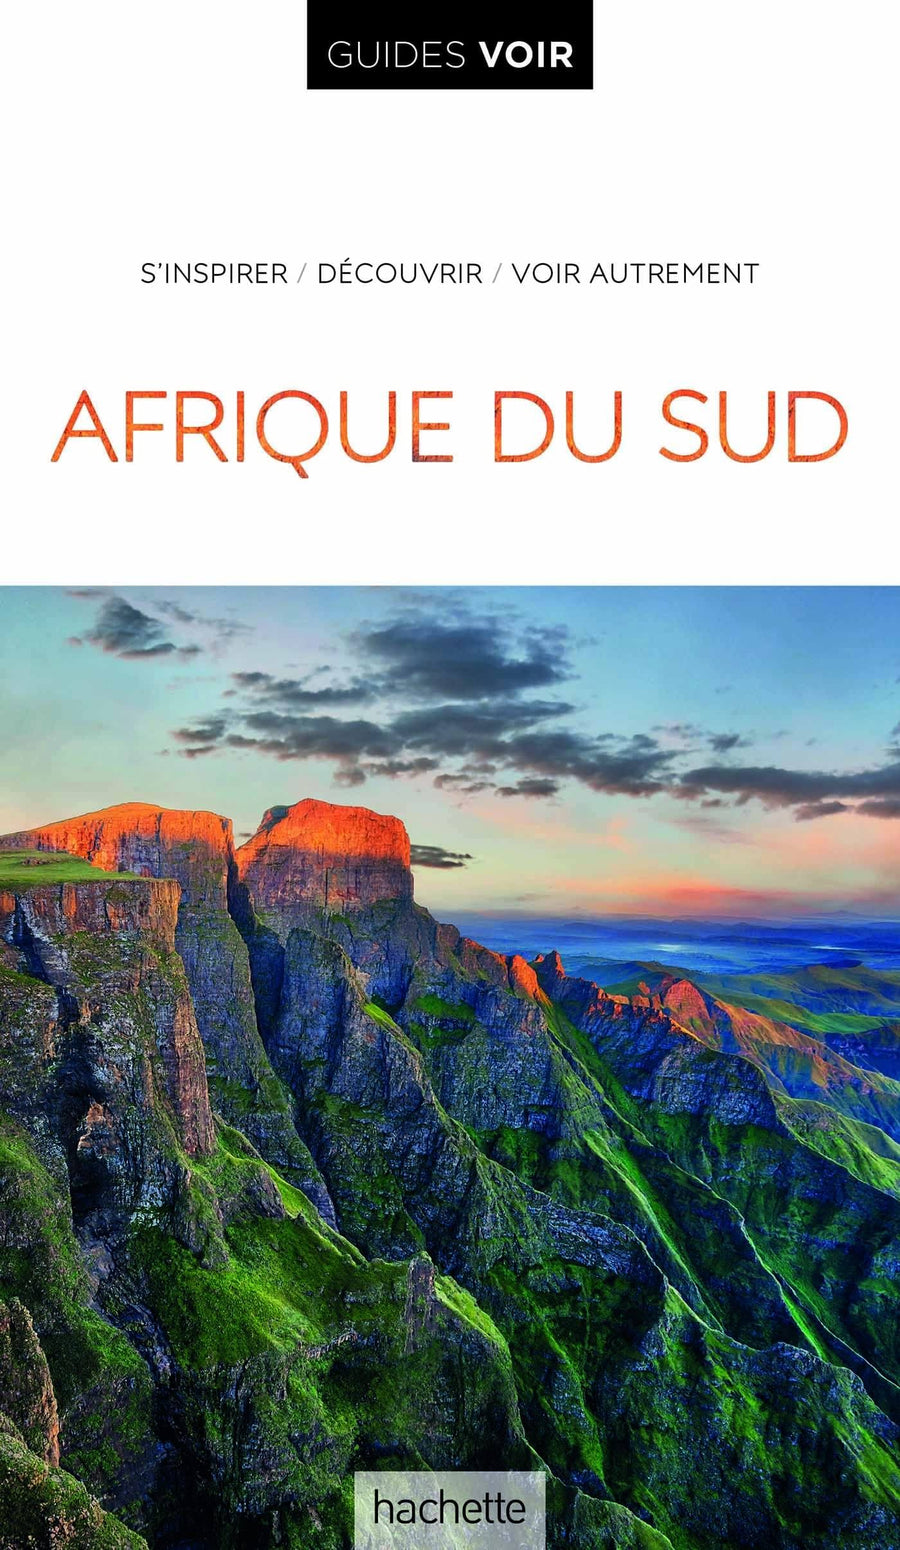 Guide de voyage - Afrique du Sud - Édition 2022 | Guides Voir guide de voyage Guides Voir 